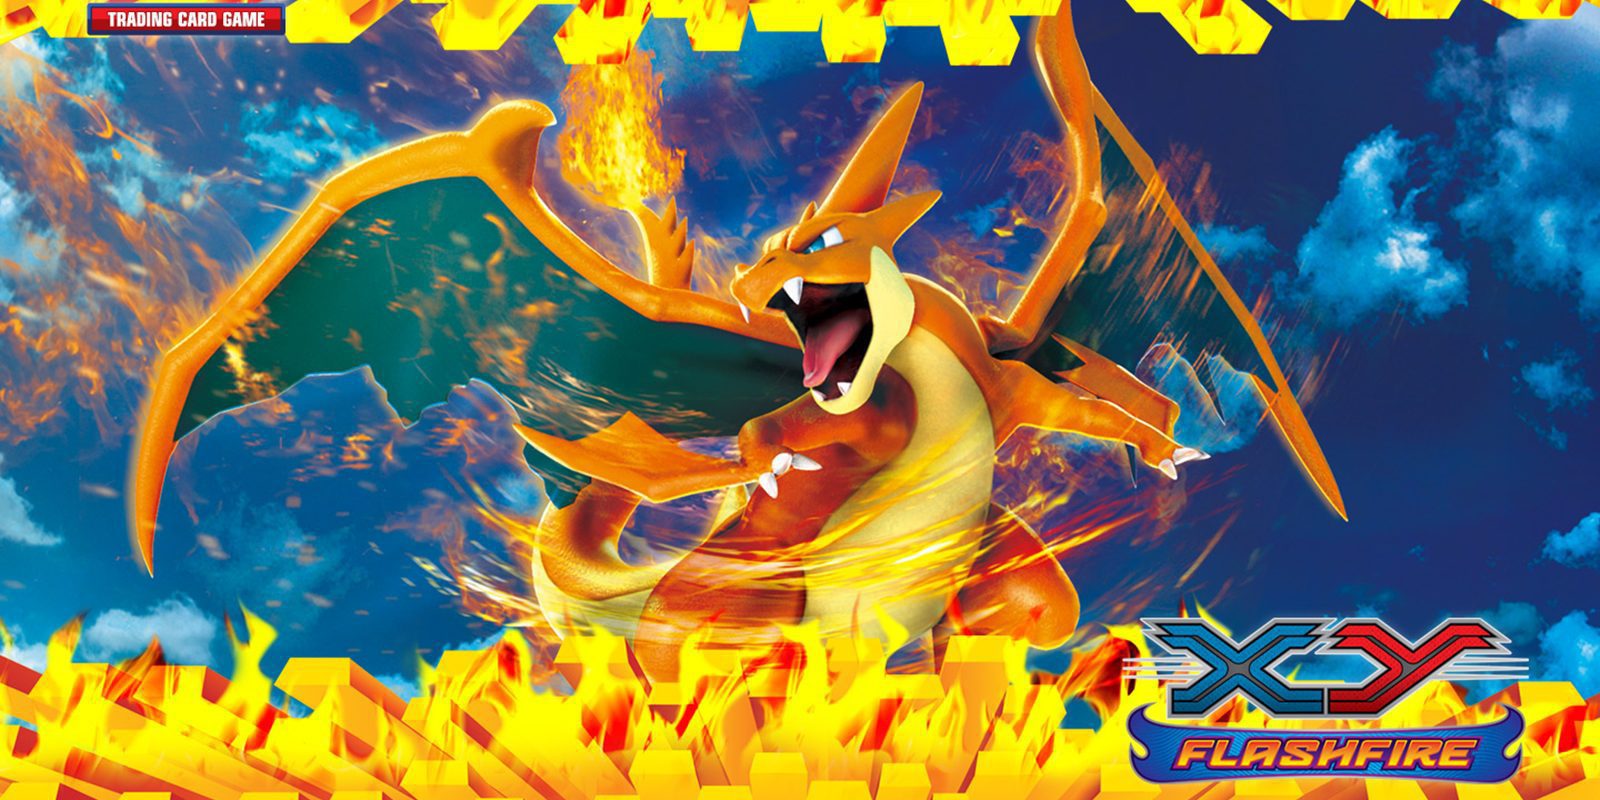 'Pokémon 'XY-Asedio de Vapor', la nueva expansión del JCC, se retrasa en España